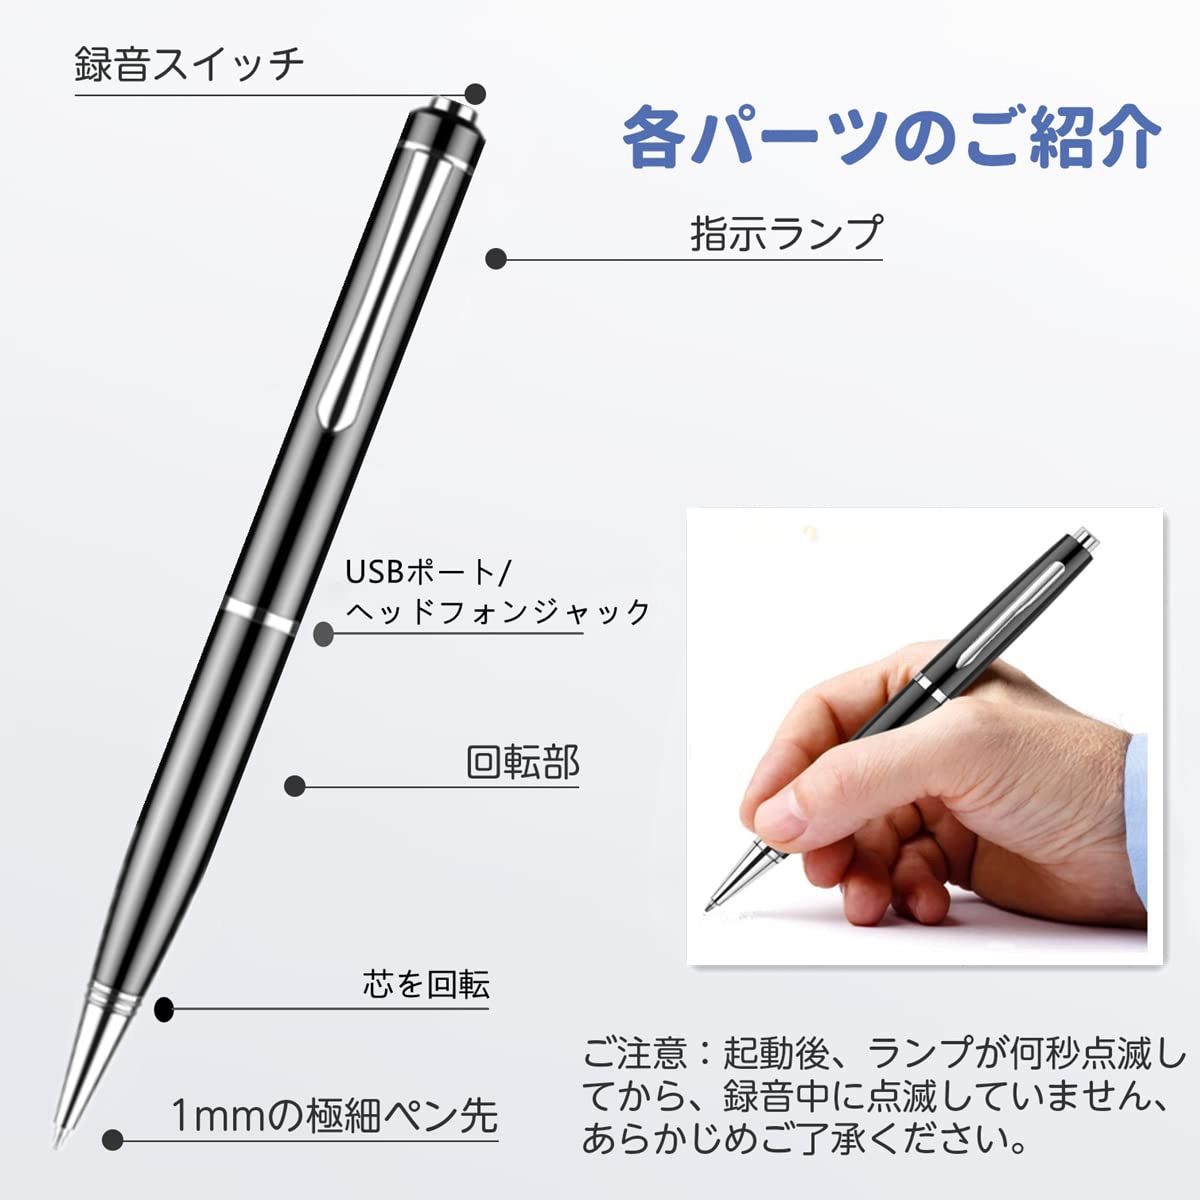 ついに再販開始 ボイスレコーダー ペン型 充電式 録音 日本語説明書